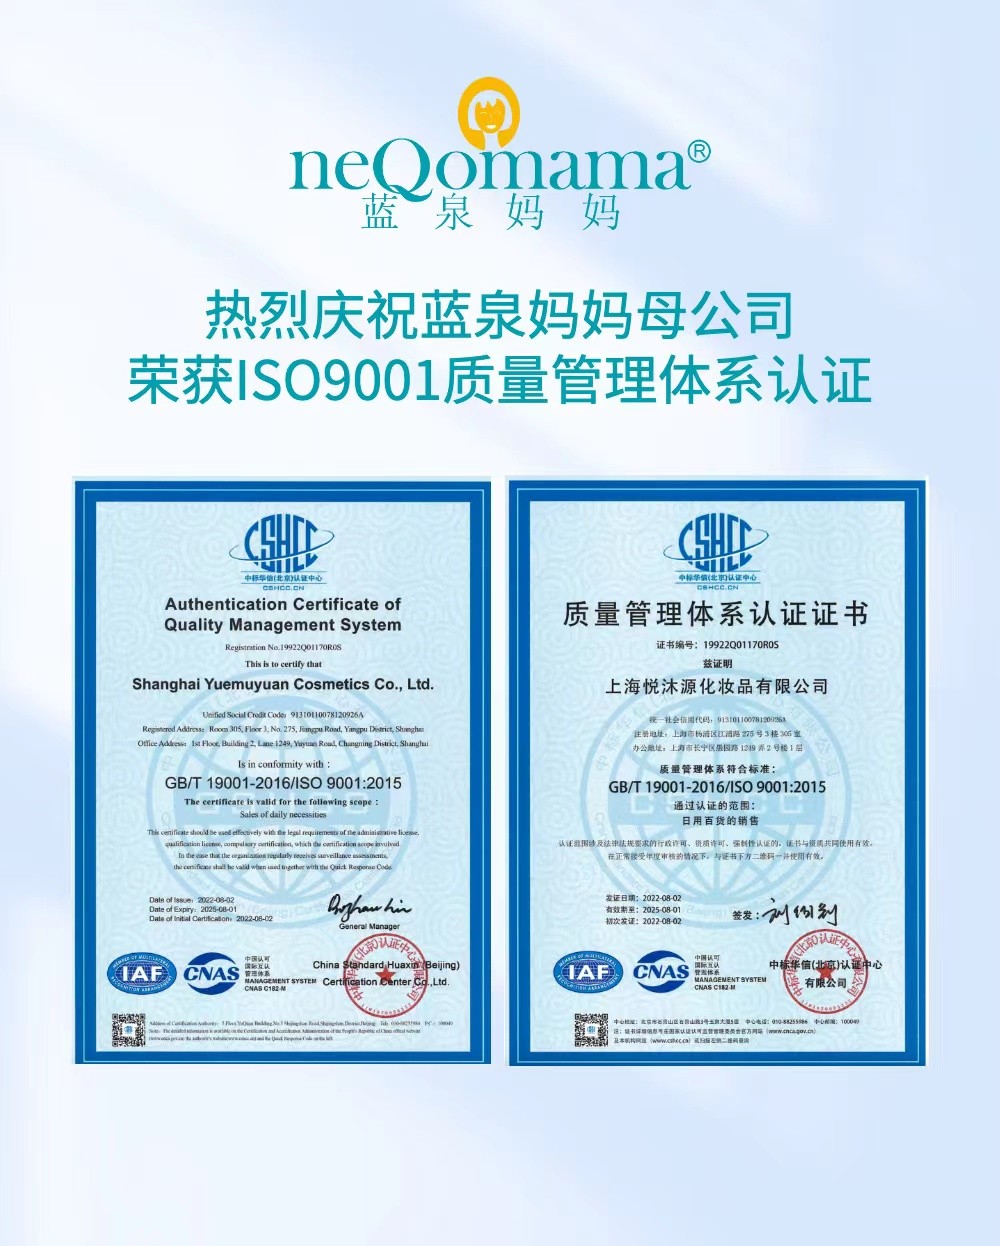 日化用品新锐品牌蓝泉妈妈母公司荣获国际质量管理体系认证